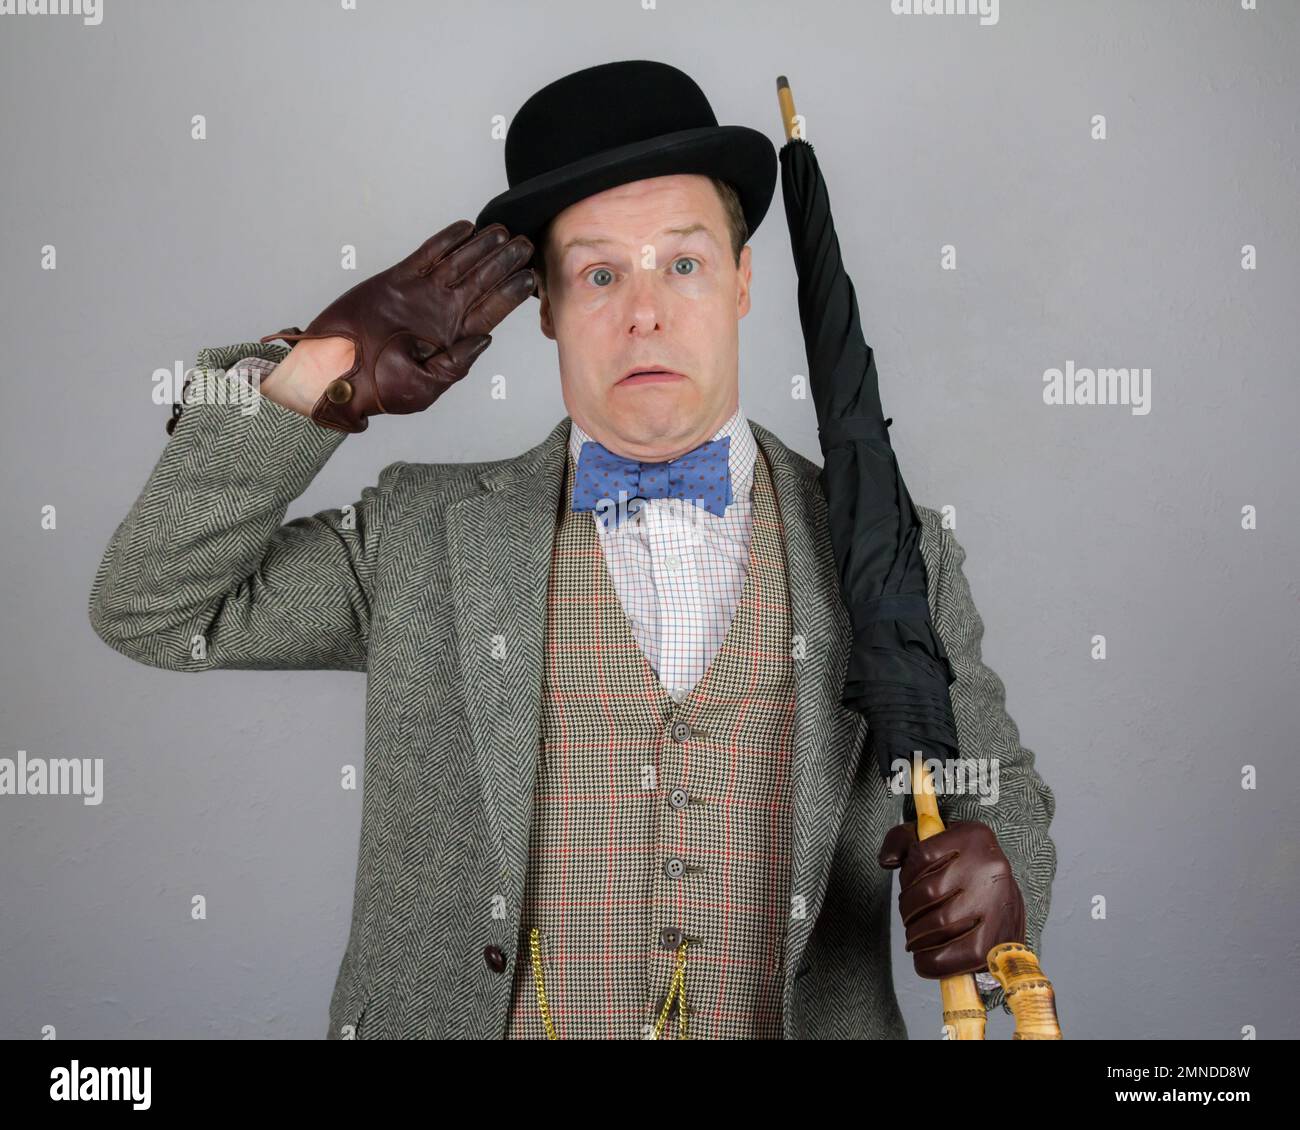 Portrait du personnage britannique en costume en tweed et chapeau de bowling tenant un parapluie comme un fusil et saluant avec audace. Concept de l'acteur Vintage Vaudeville Banque D'Images